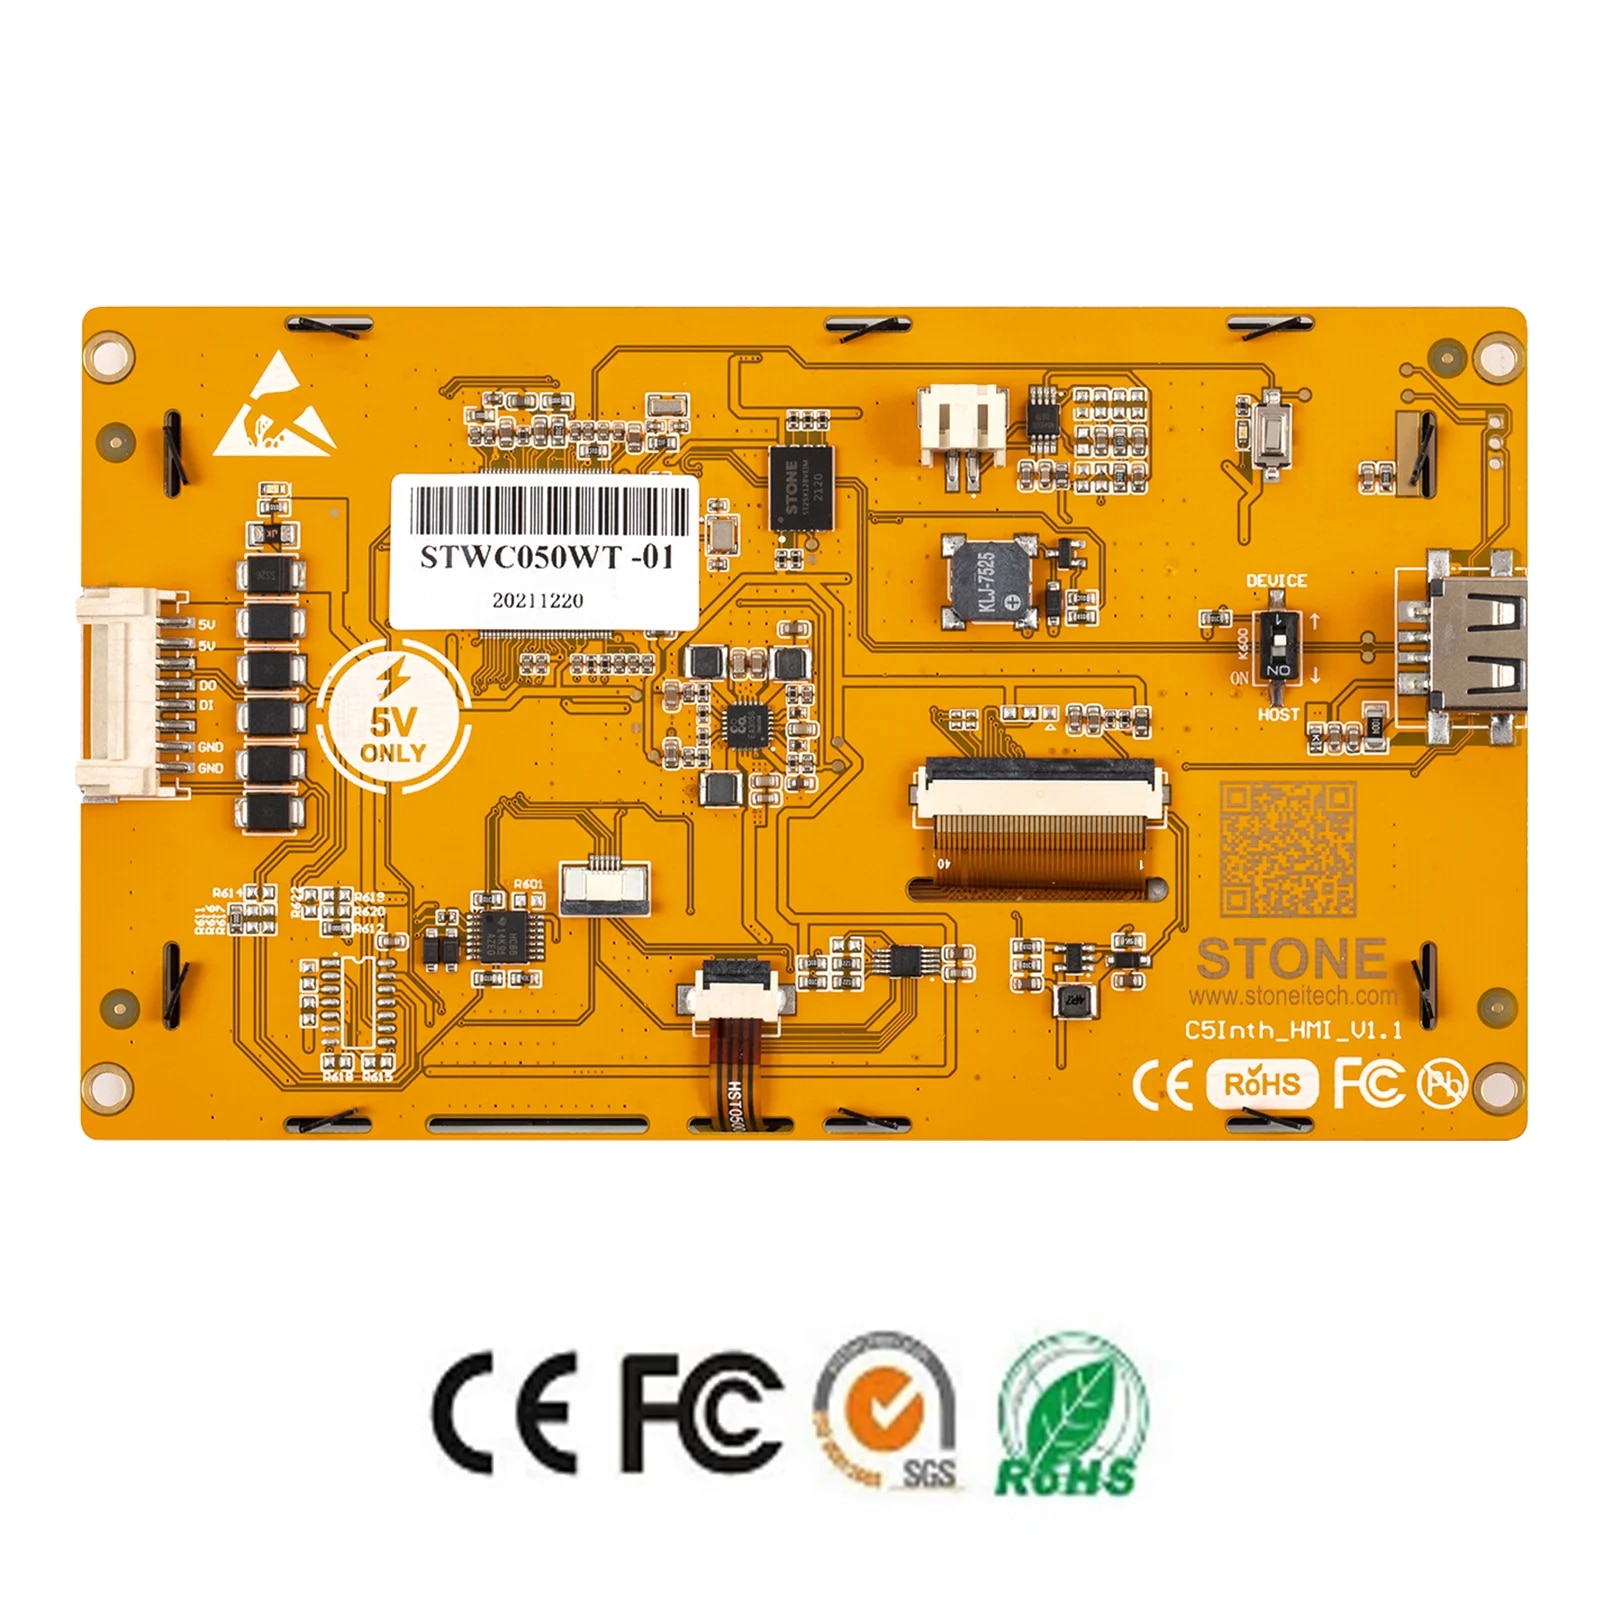 5 inch HMI intelligente LCD -display -module met aanraakpaneelondersteuning voor St MCU/ESP32 MCU/Arduino/Raspberry Pi